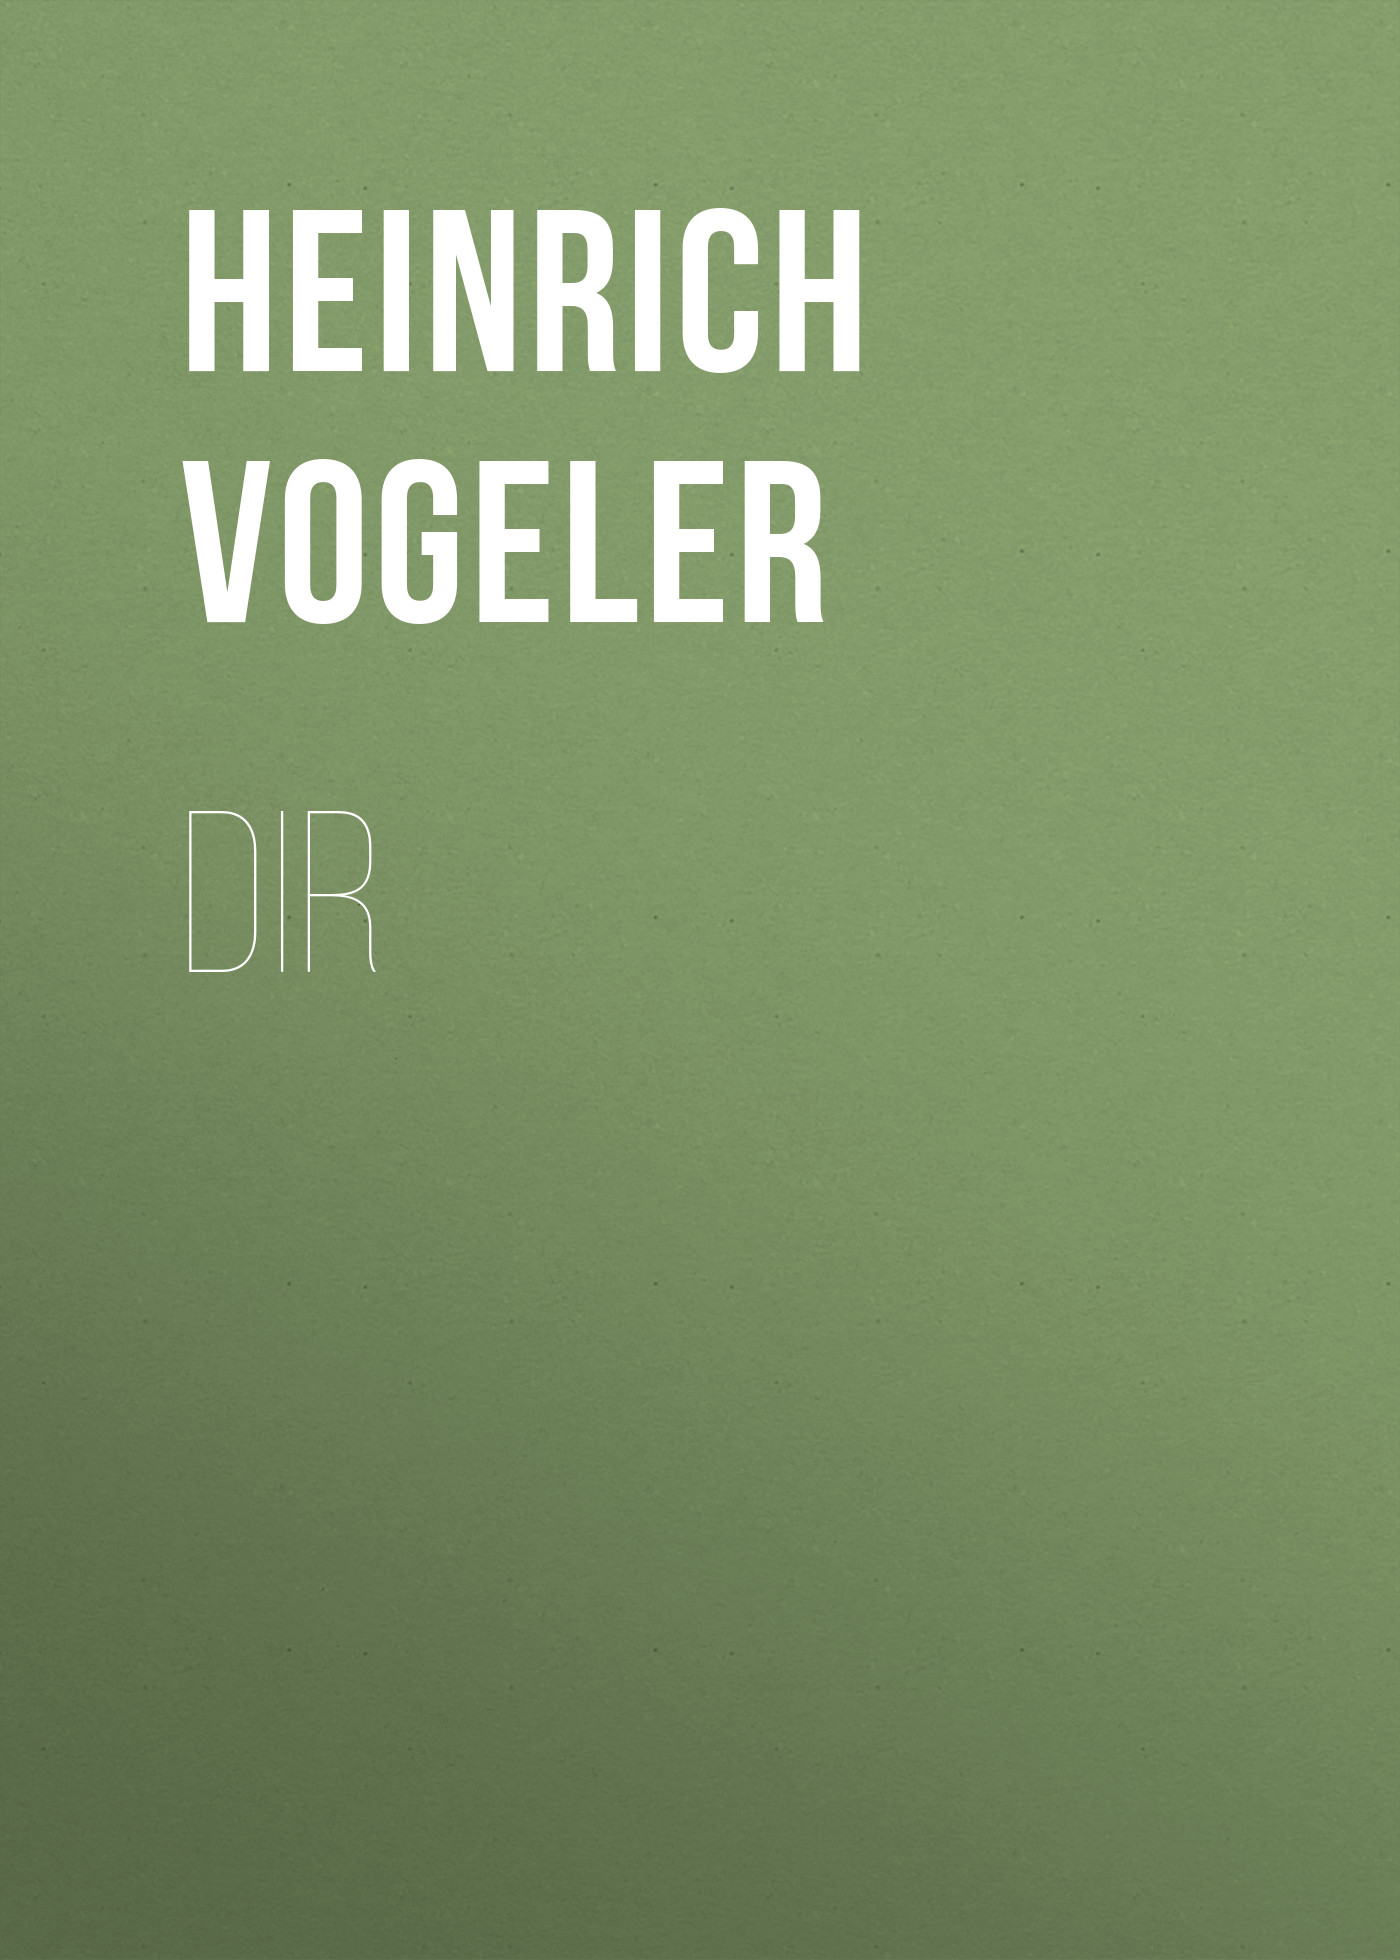 Книга DIR из серии , созданная Heinrich Vogeler, может относится к жанру Зарубежные стихи, Поэзия, Зарубежная старинная литература, Зарубежная классика. Стоимость электронной книги DIR с идентификатором 34282848 составляет 0 руб.